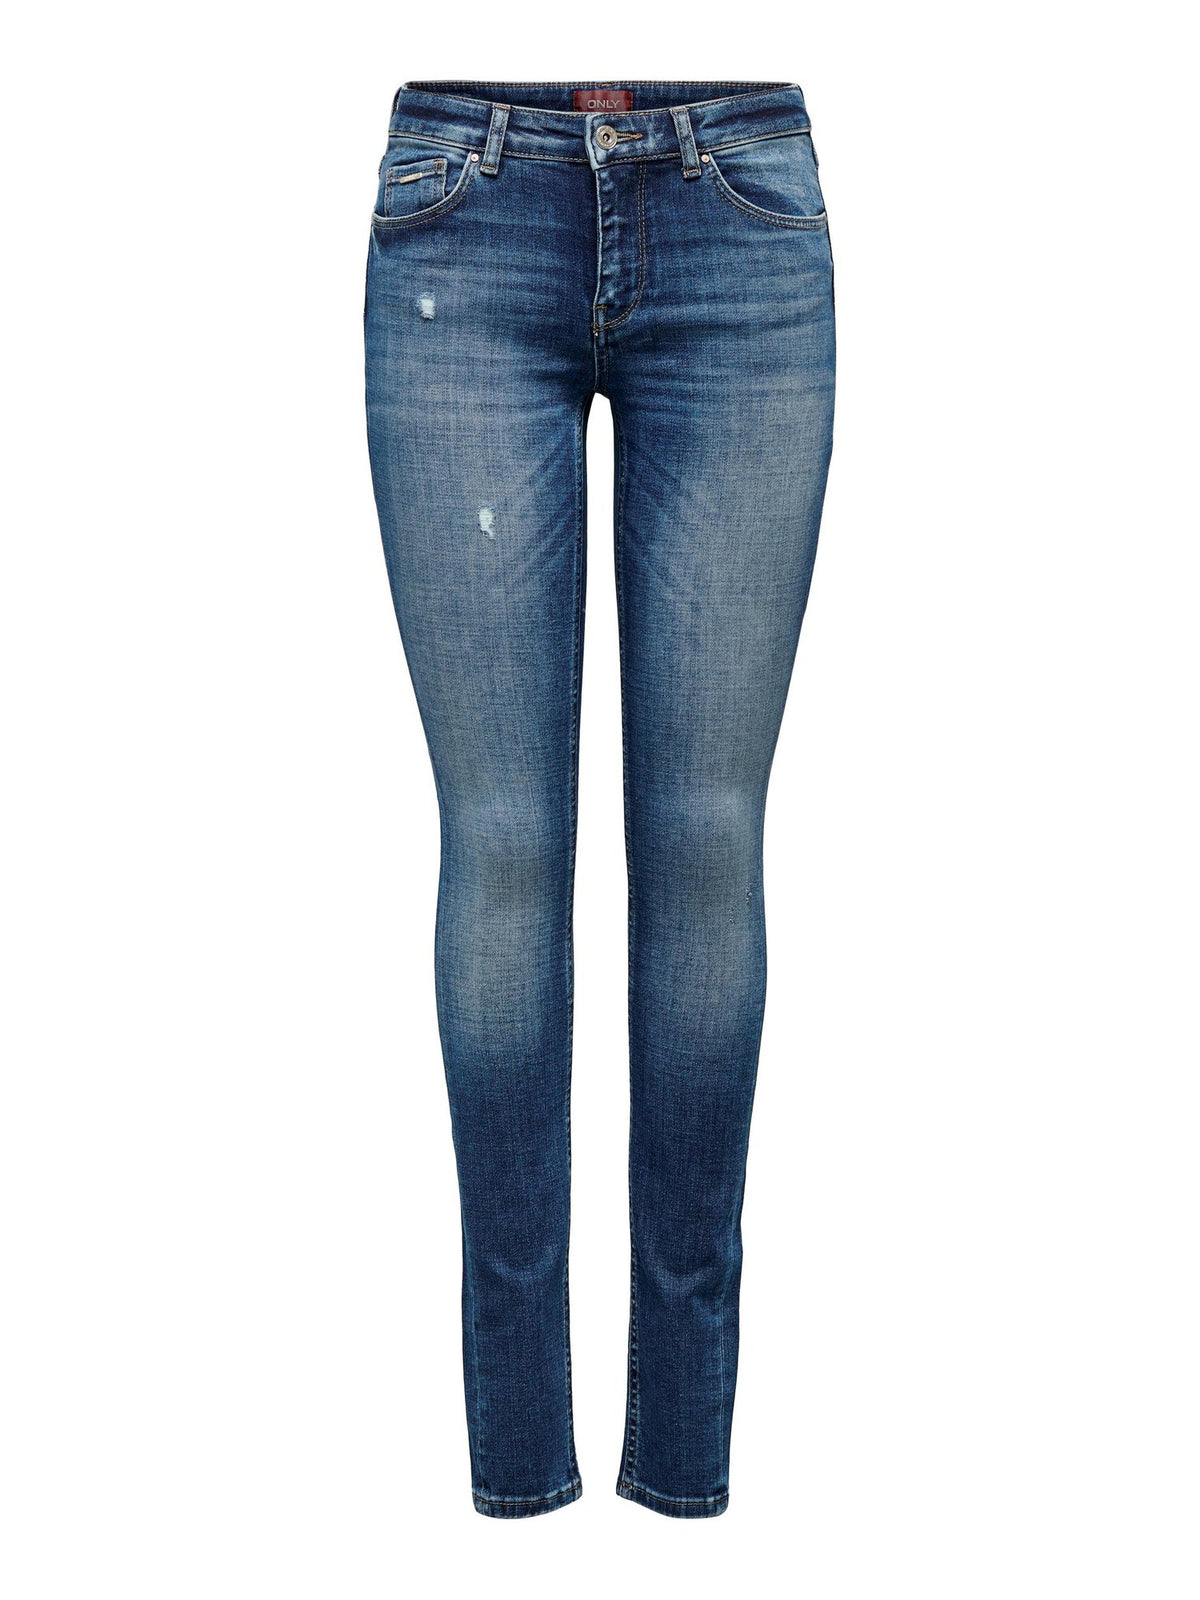 ONLY Damen Skinny Jeans ONLCARMEN, blau